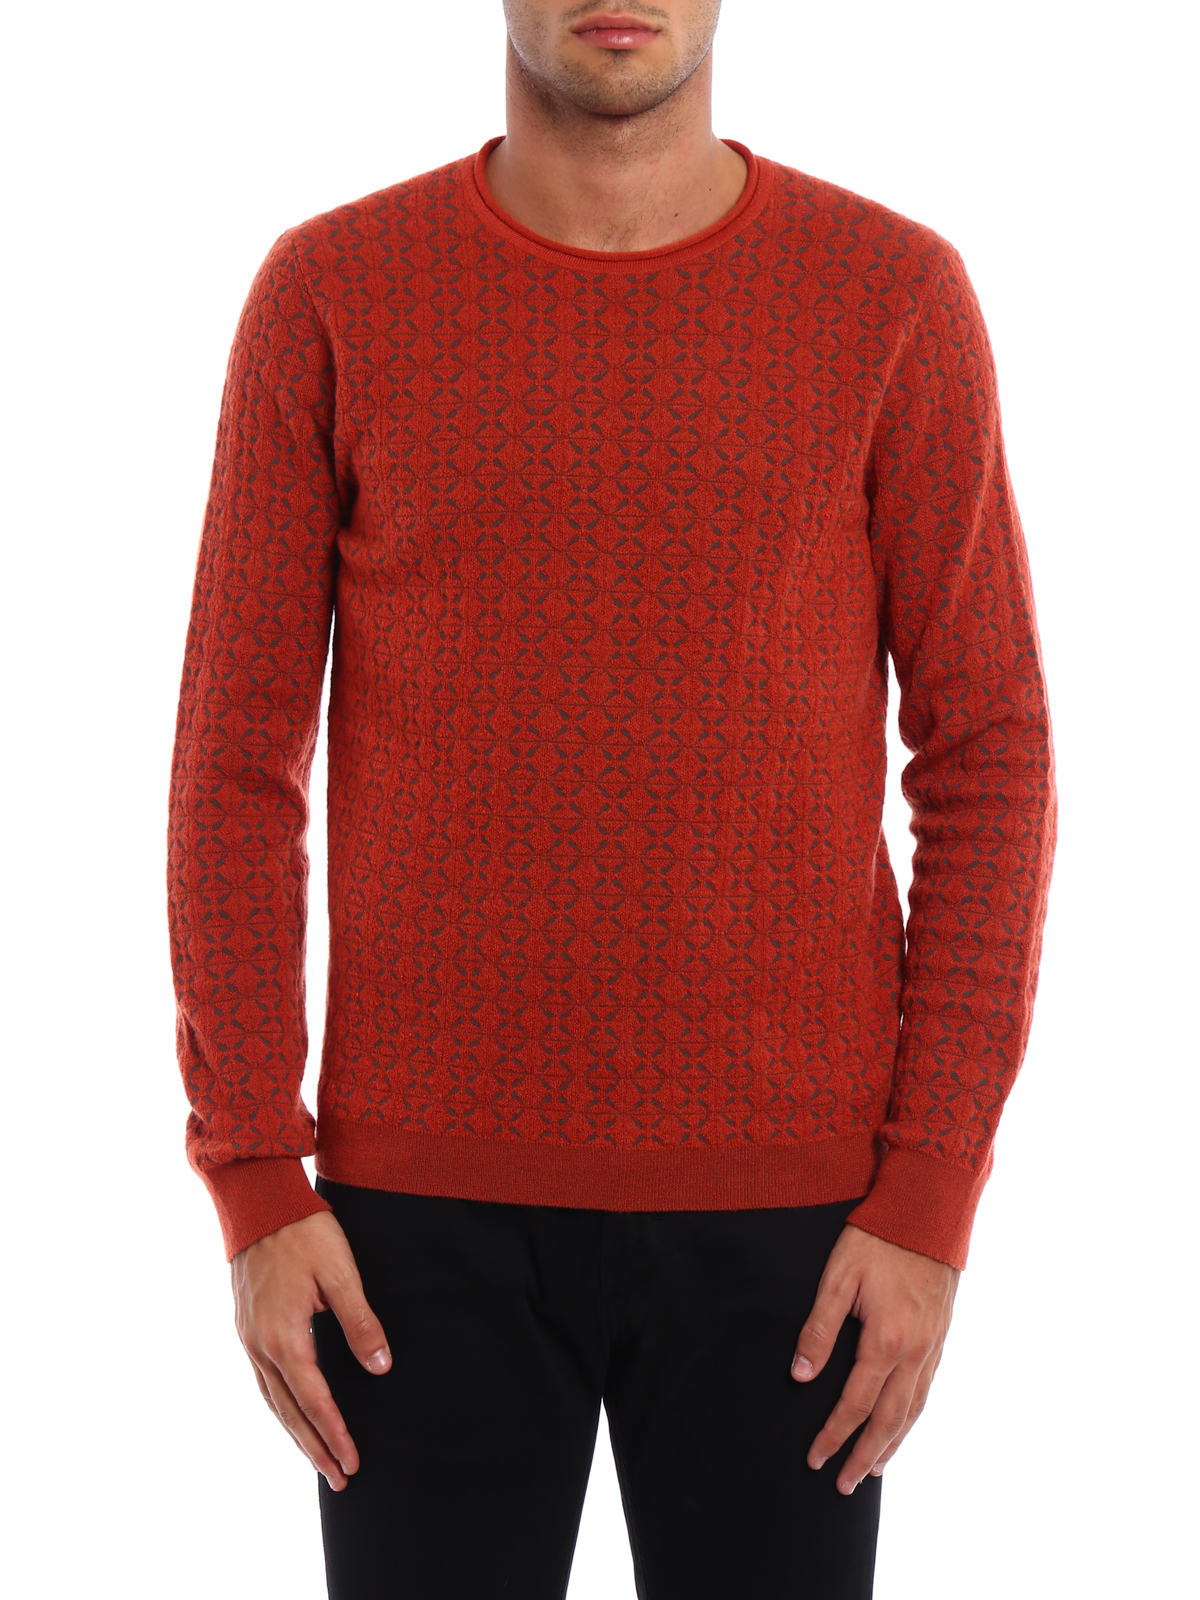 Giorgio Armani Jacquard Sweater